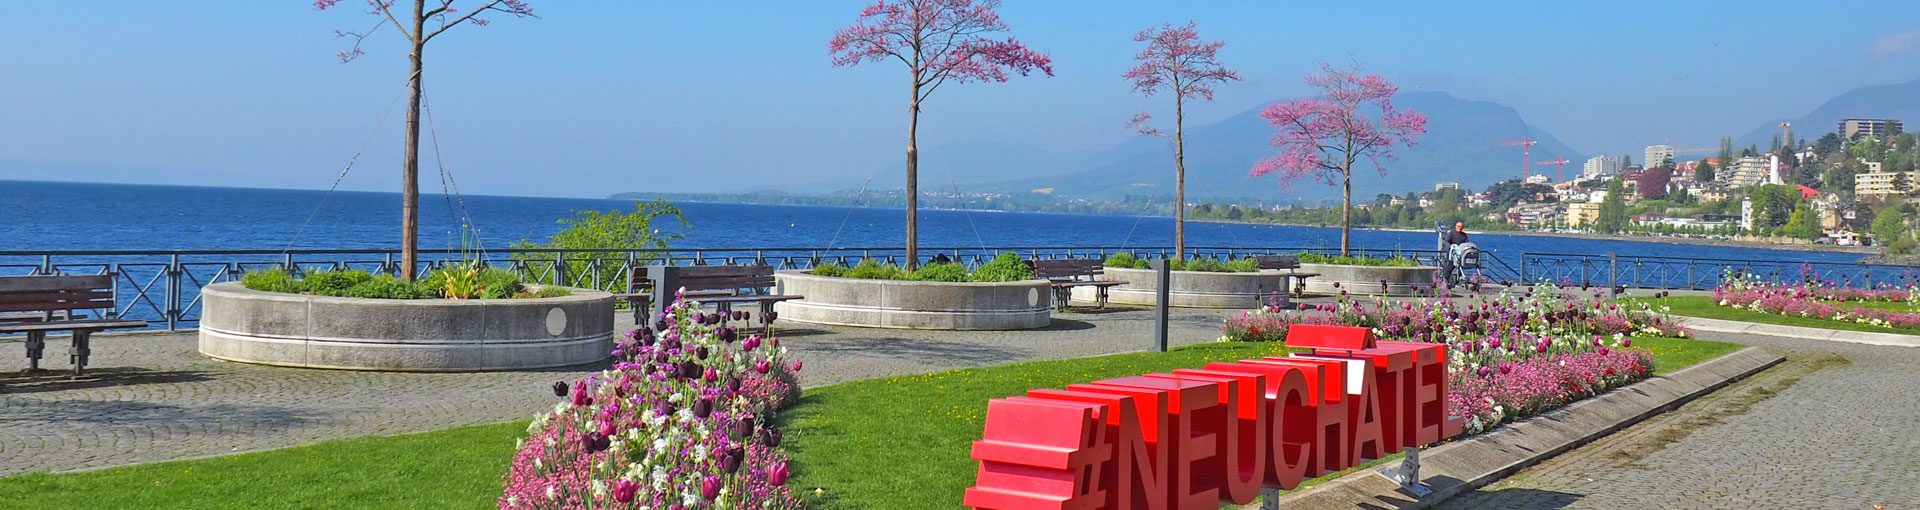 L'esplanade du Mont-Blanc et son célèbre hashtag Neuchâtel, avec des parterres de tulipes et le lac bleu turquoise.